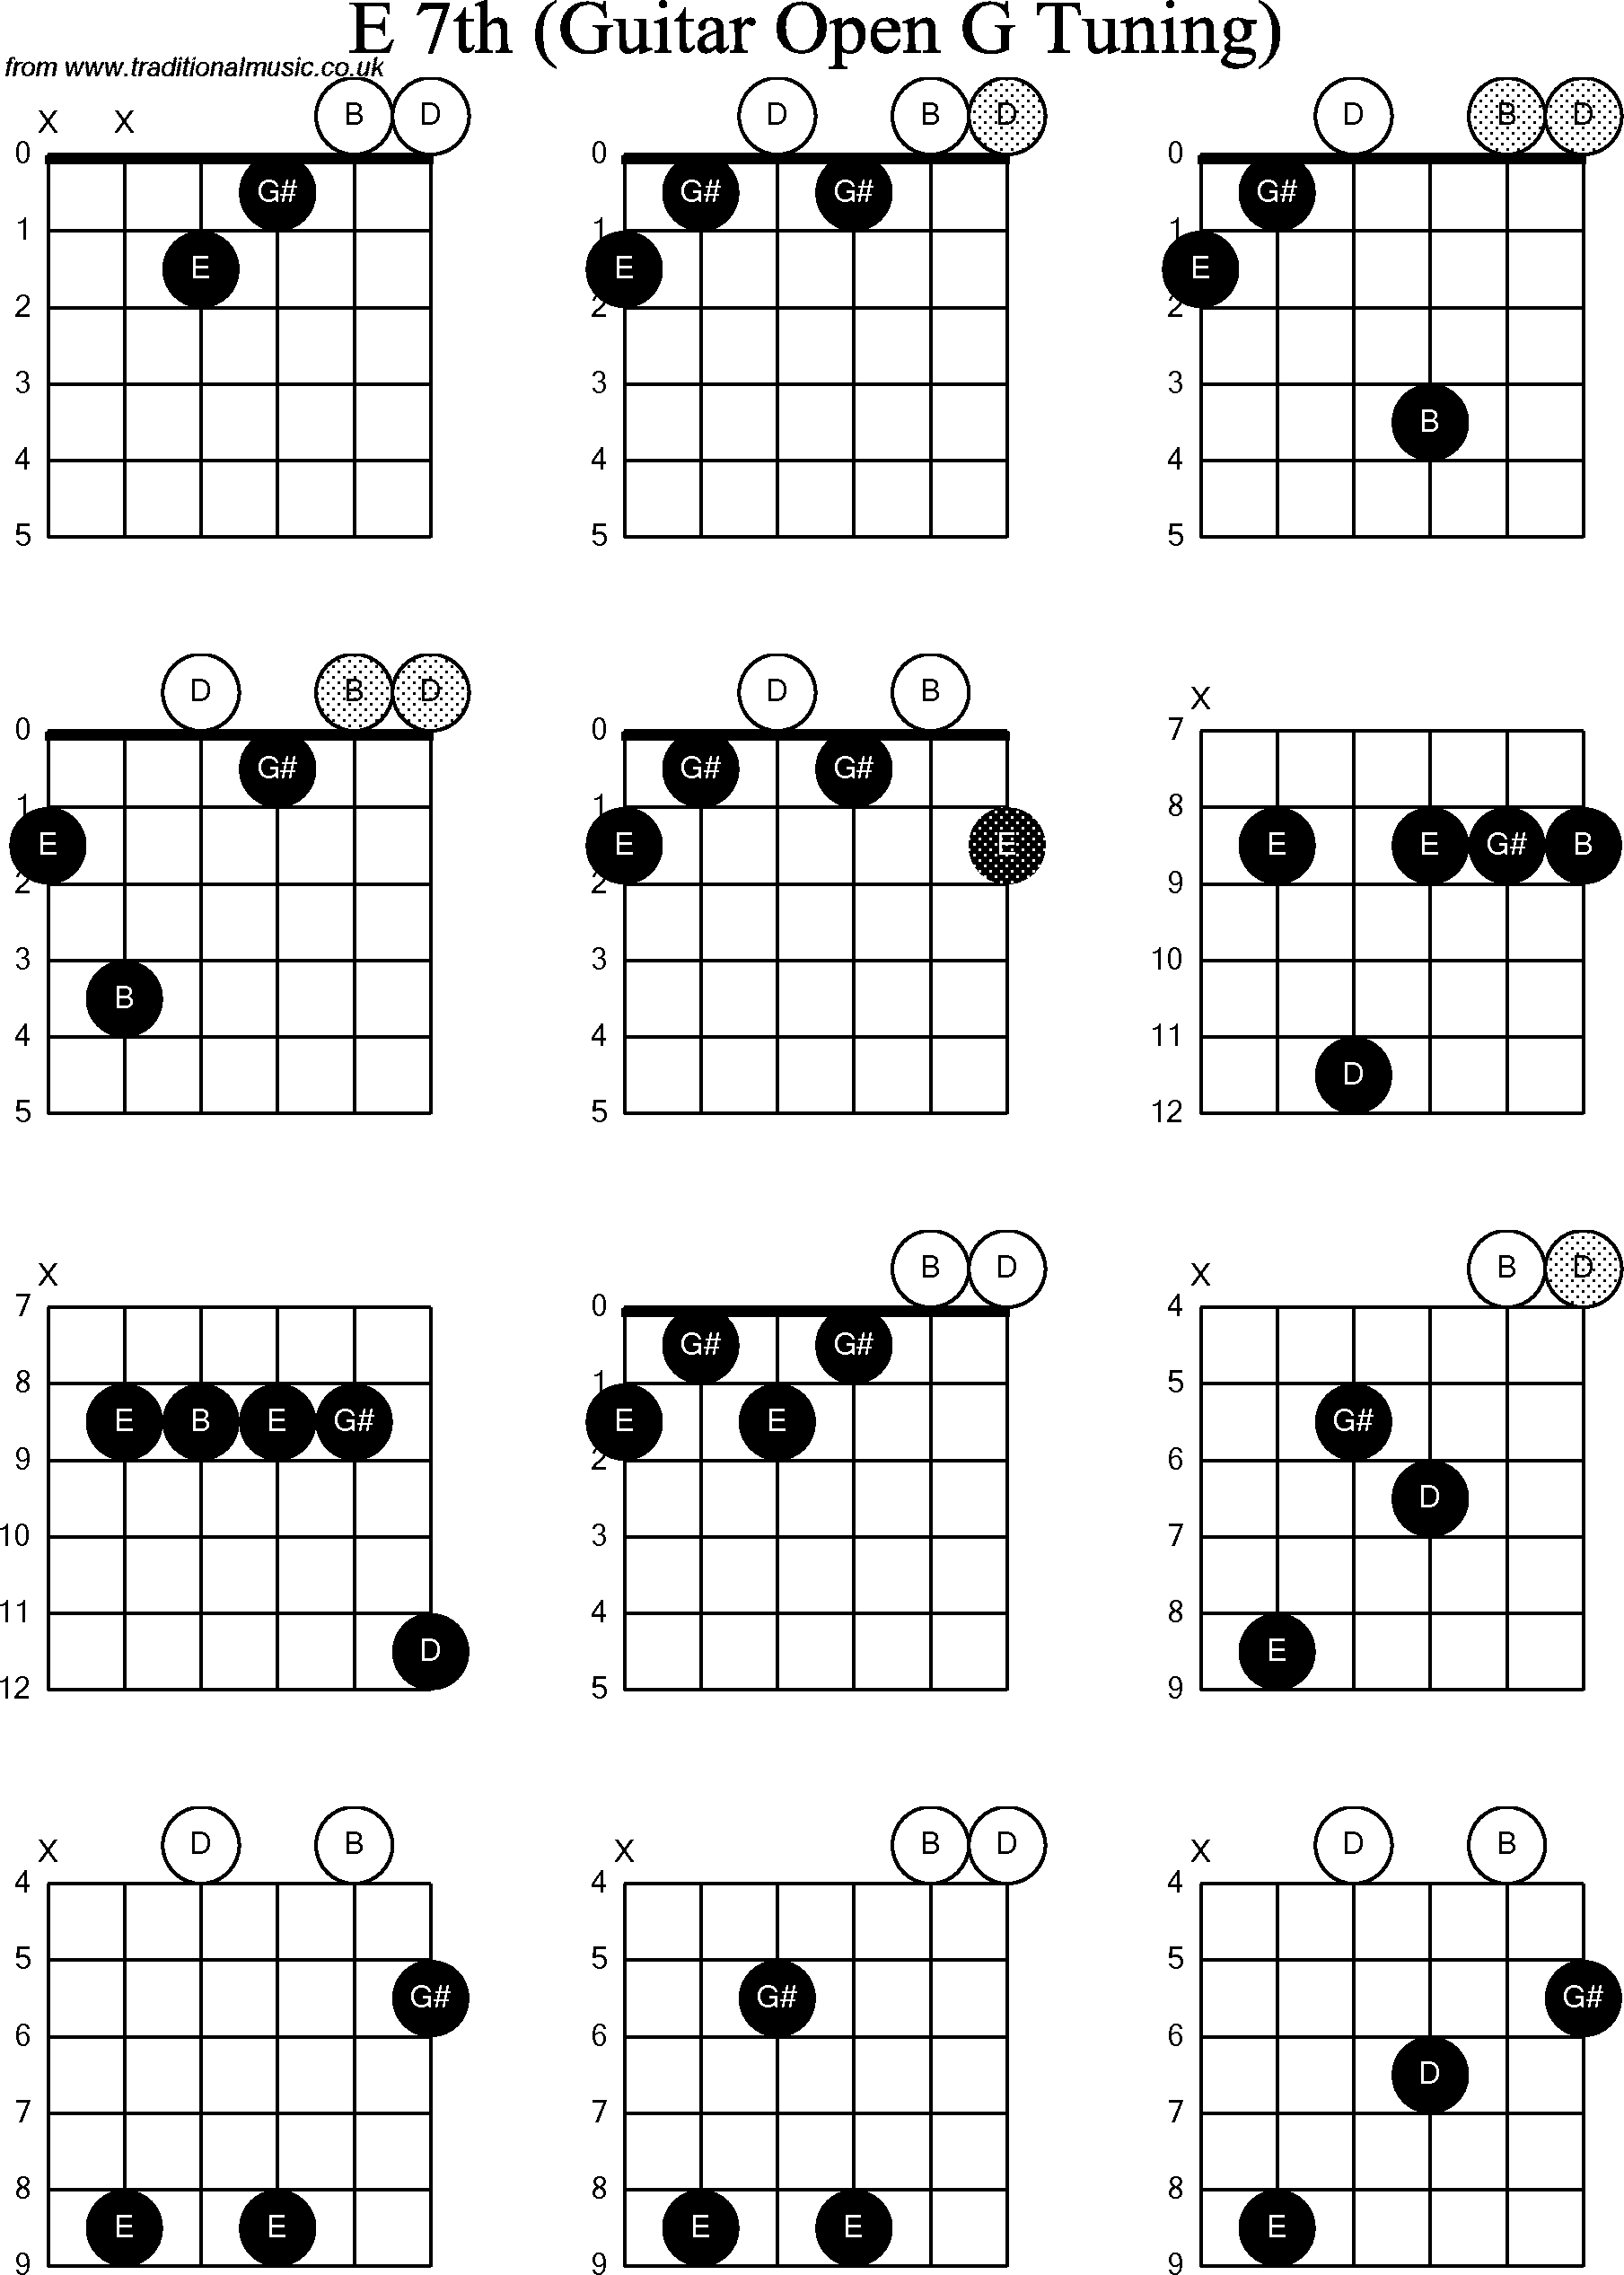 Chord diagrams for Dobro E7th